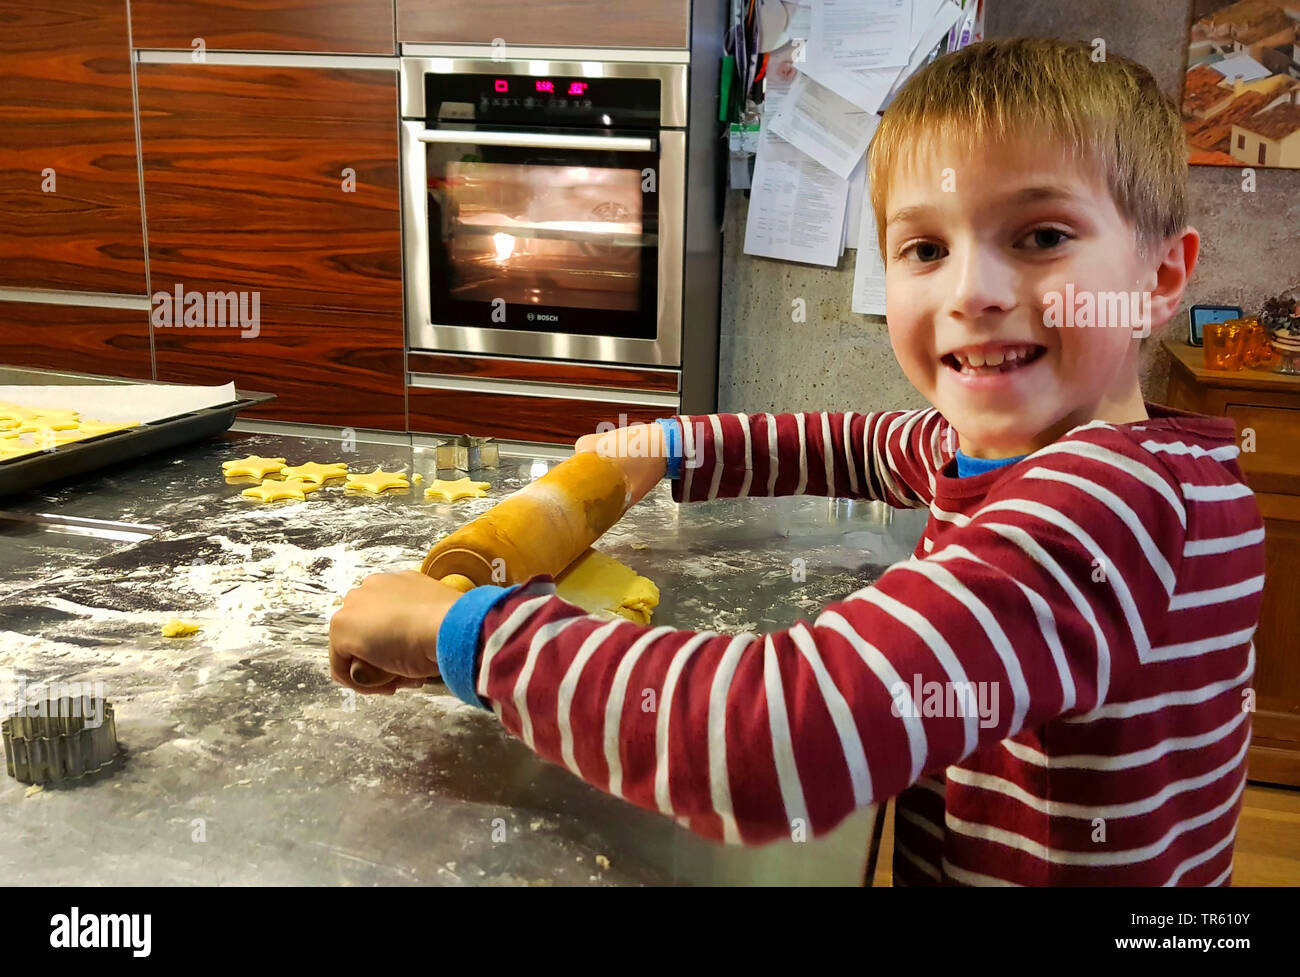 Little Boy baking cookies dans une cuisine, Allemagne Banque D'Images